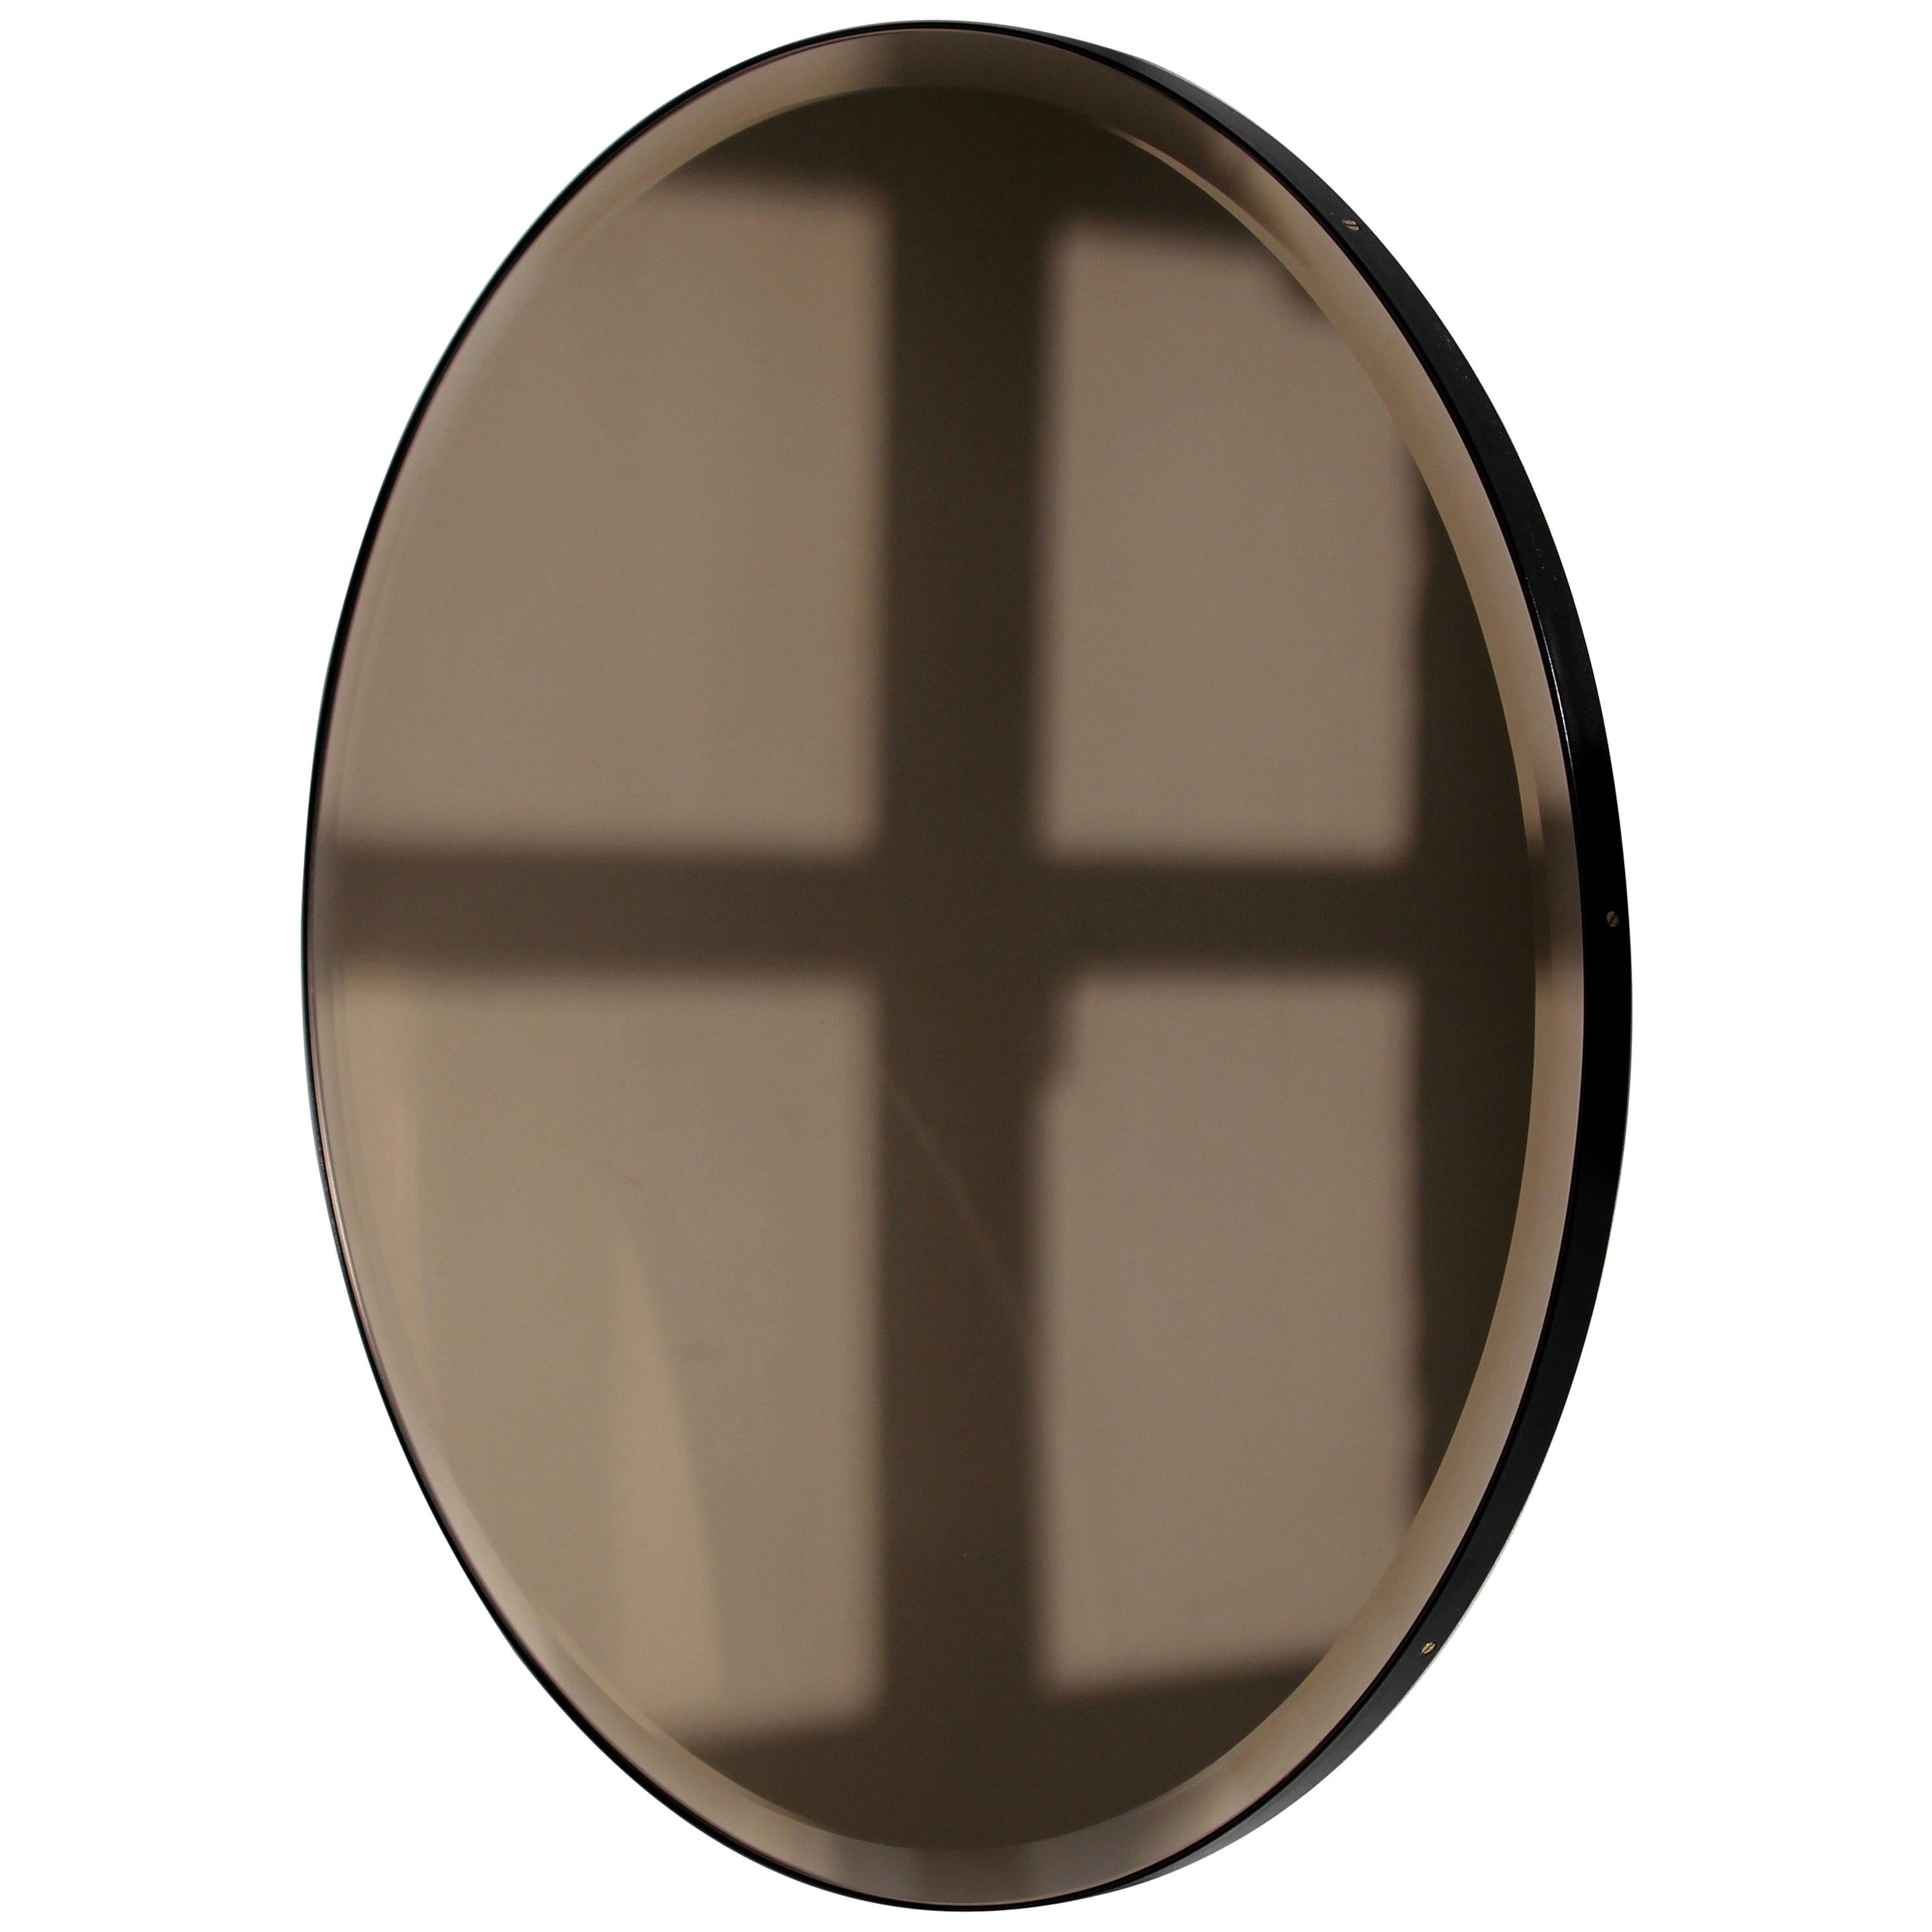 Orbis Abgeschrägter Bronze getönter Runder Moderner Spiegel mit schwarzem Rahmen, Regular